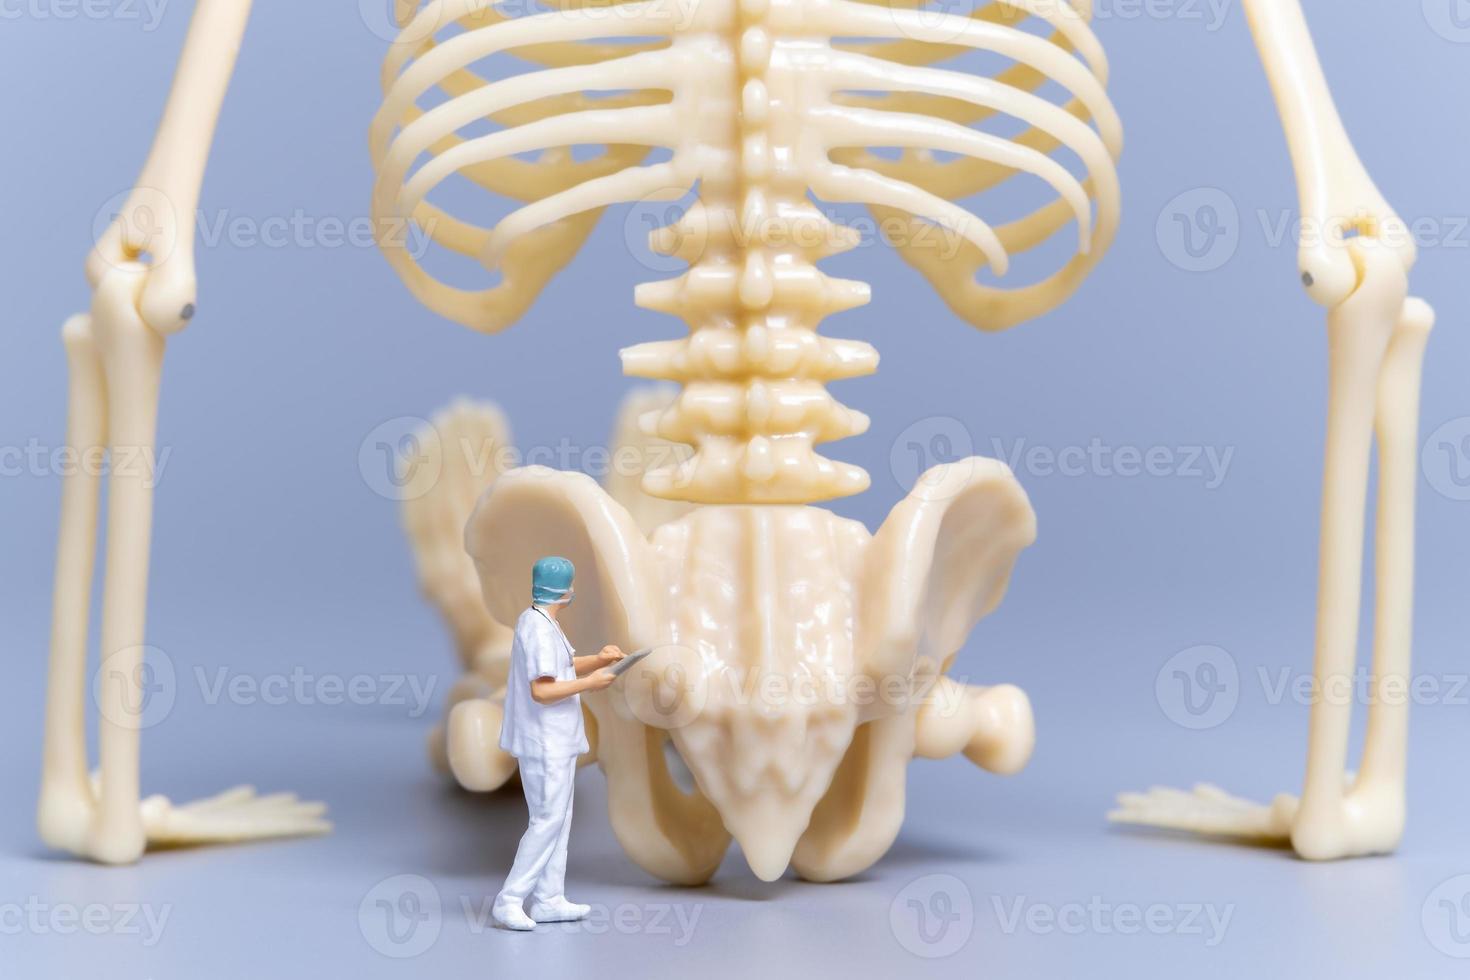 médico de personas en miniatura con un hueso humano gigante sobre un fondo gris foto